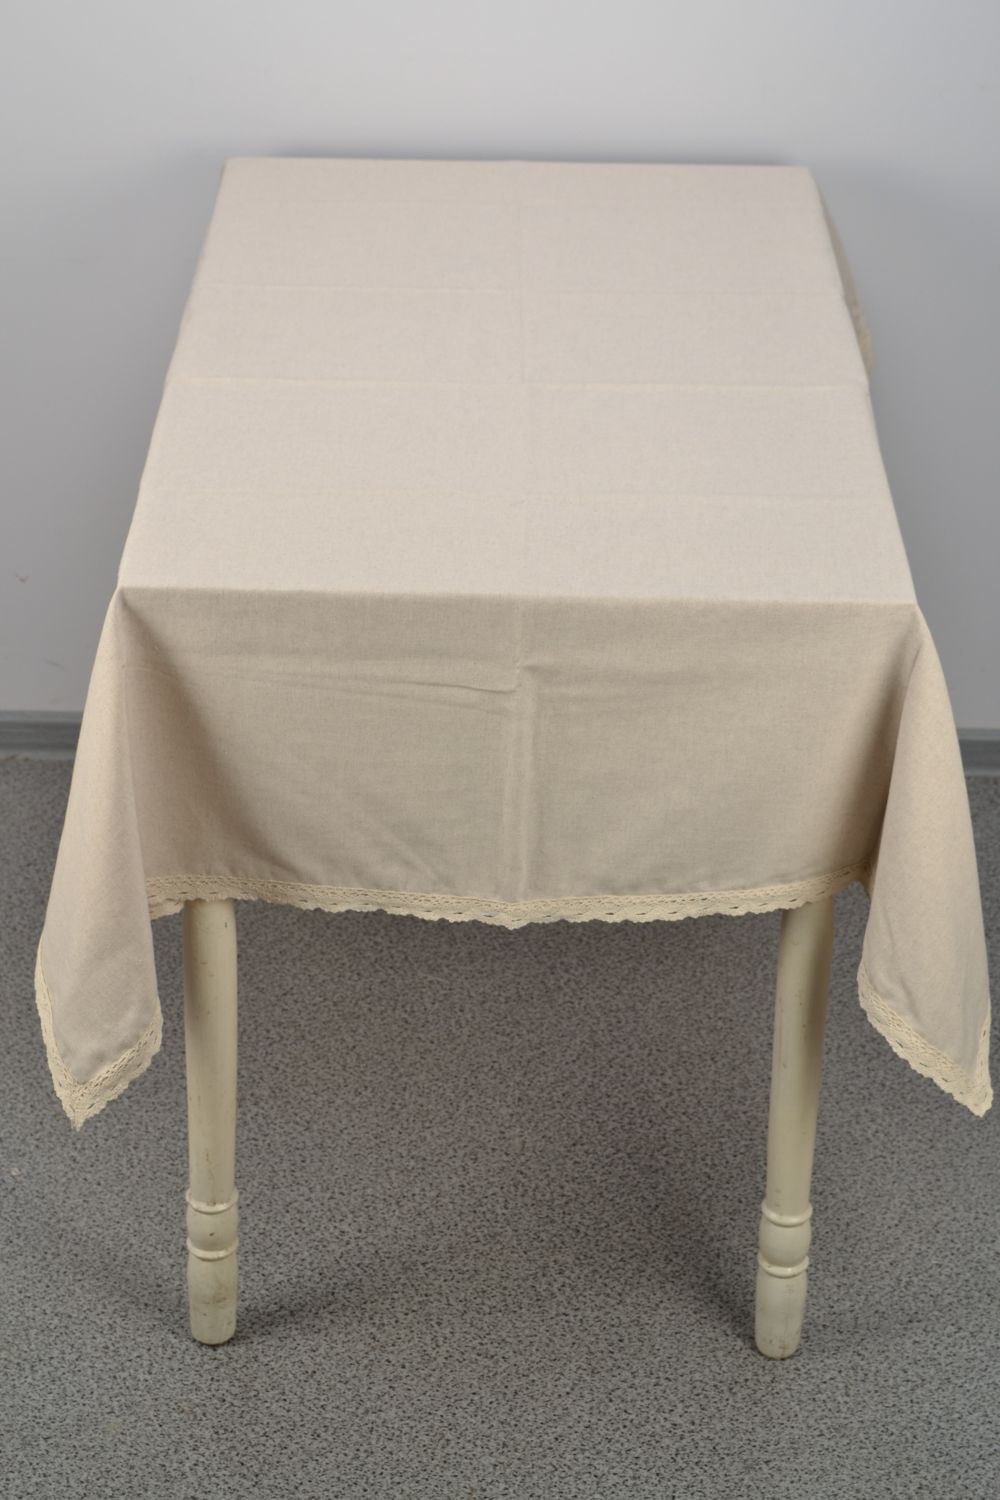 Скатерть на прямоугольный стол из хлопка и полиамида серая с кружевом фото 2